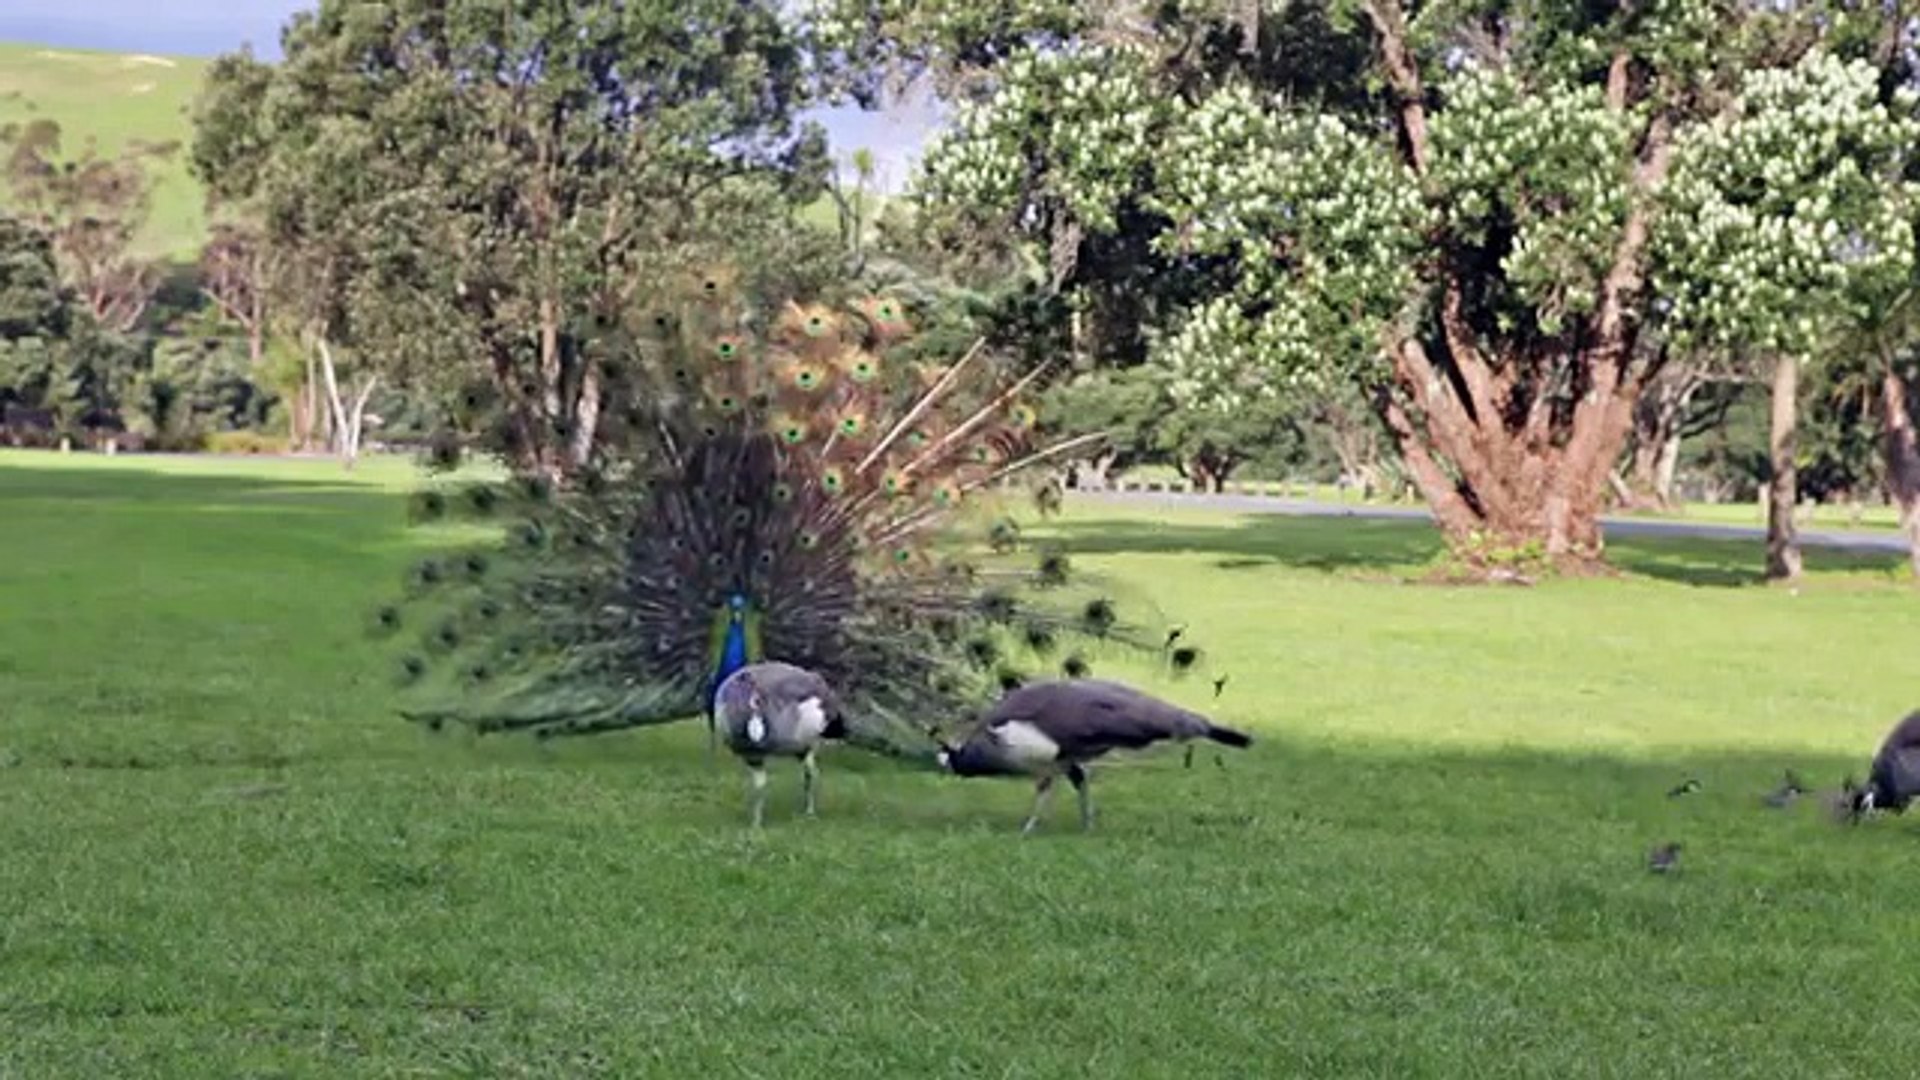 Peacock mating dance display